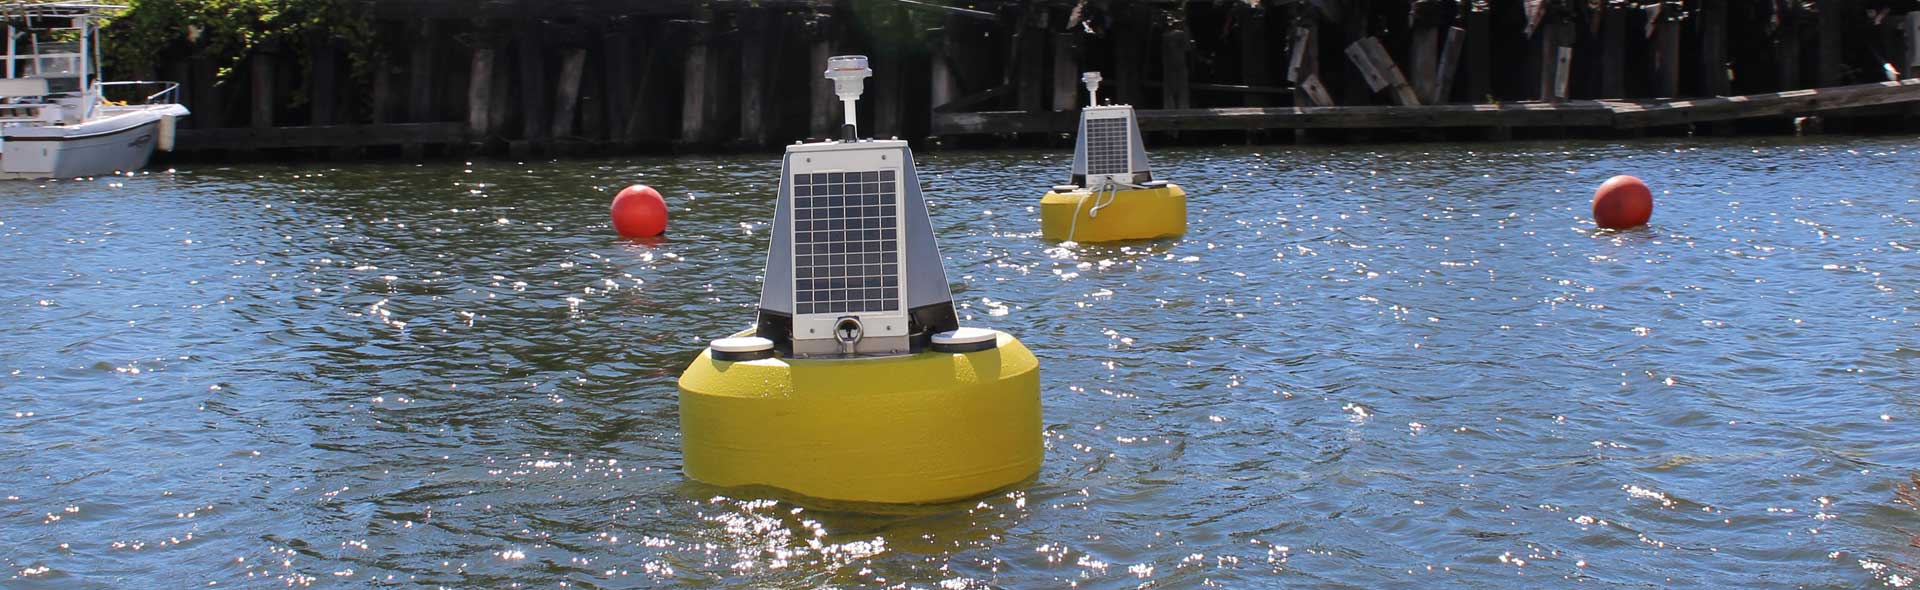 River monitoring buoy